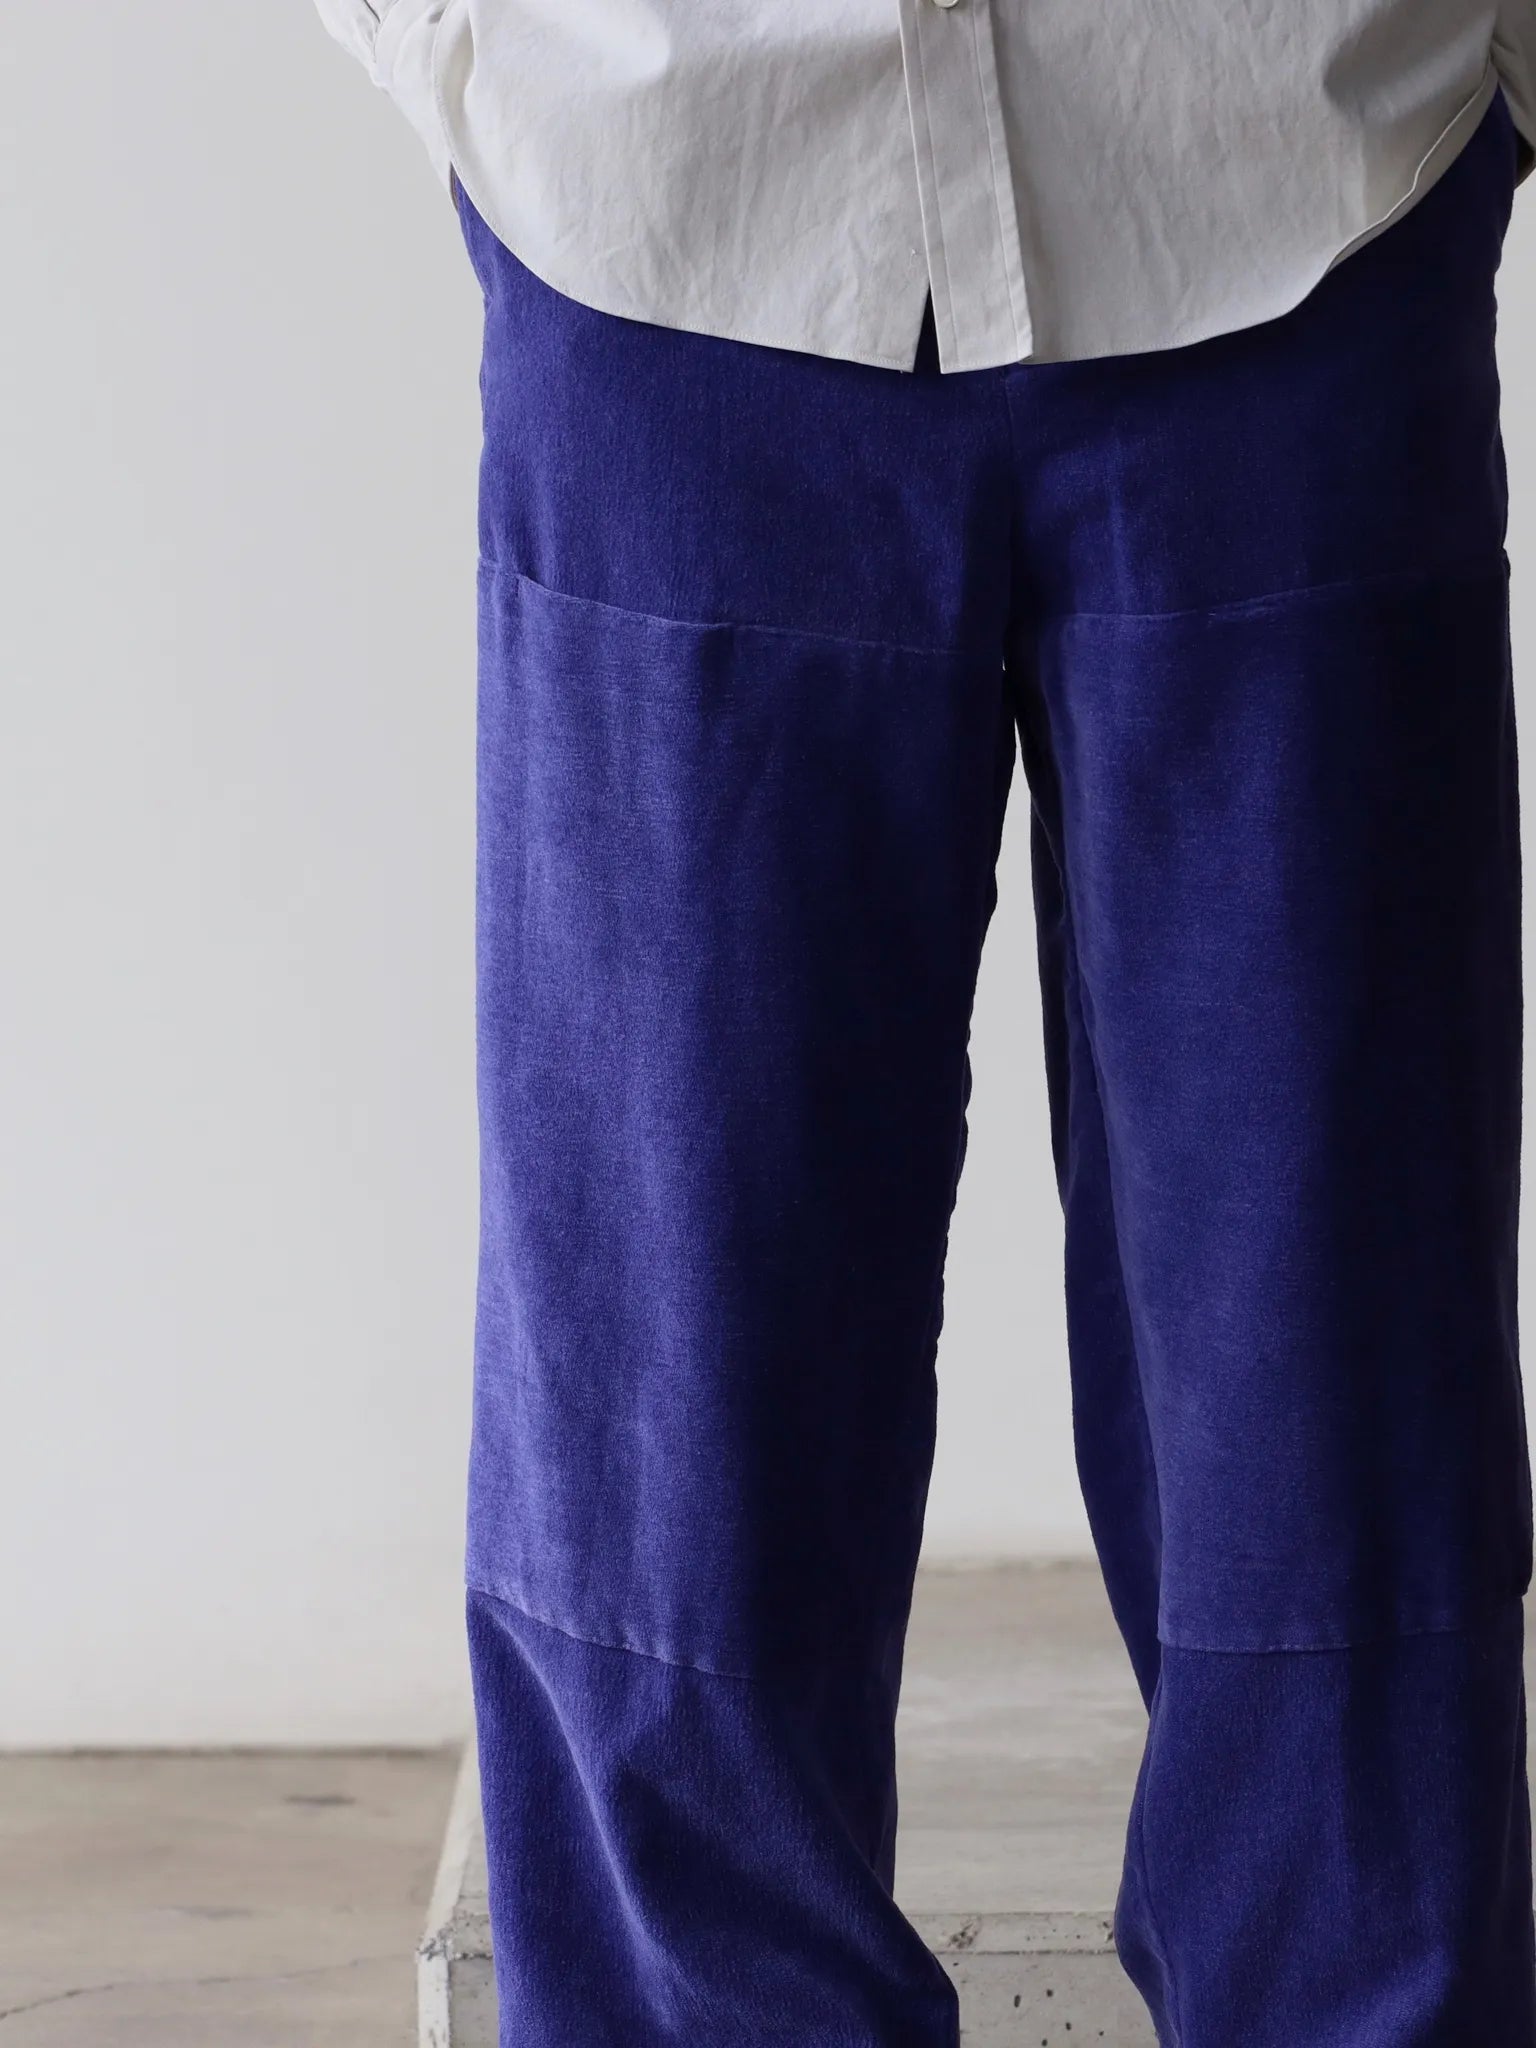 amachi-frost-pants-blue-purple-2